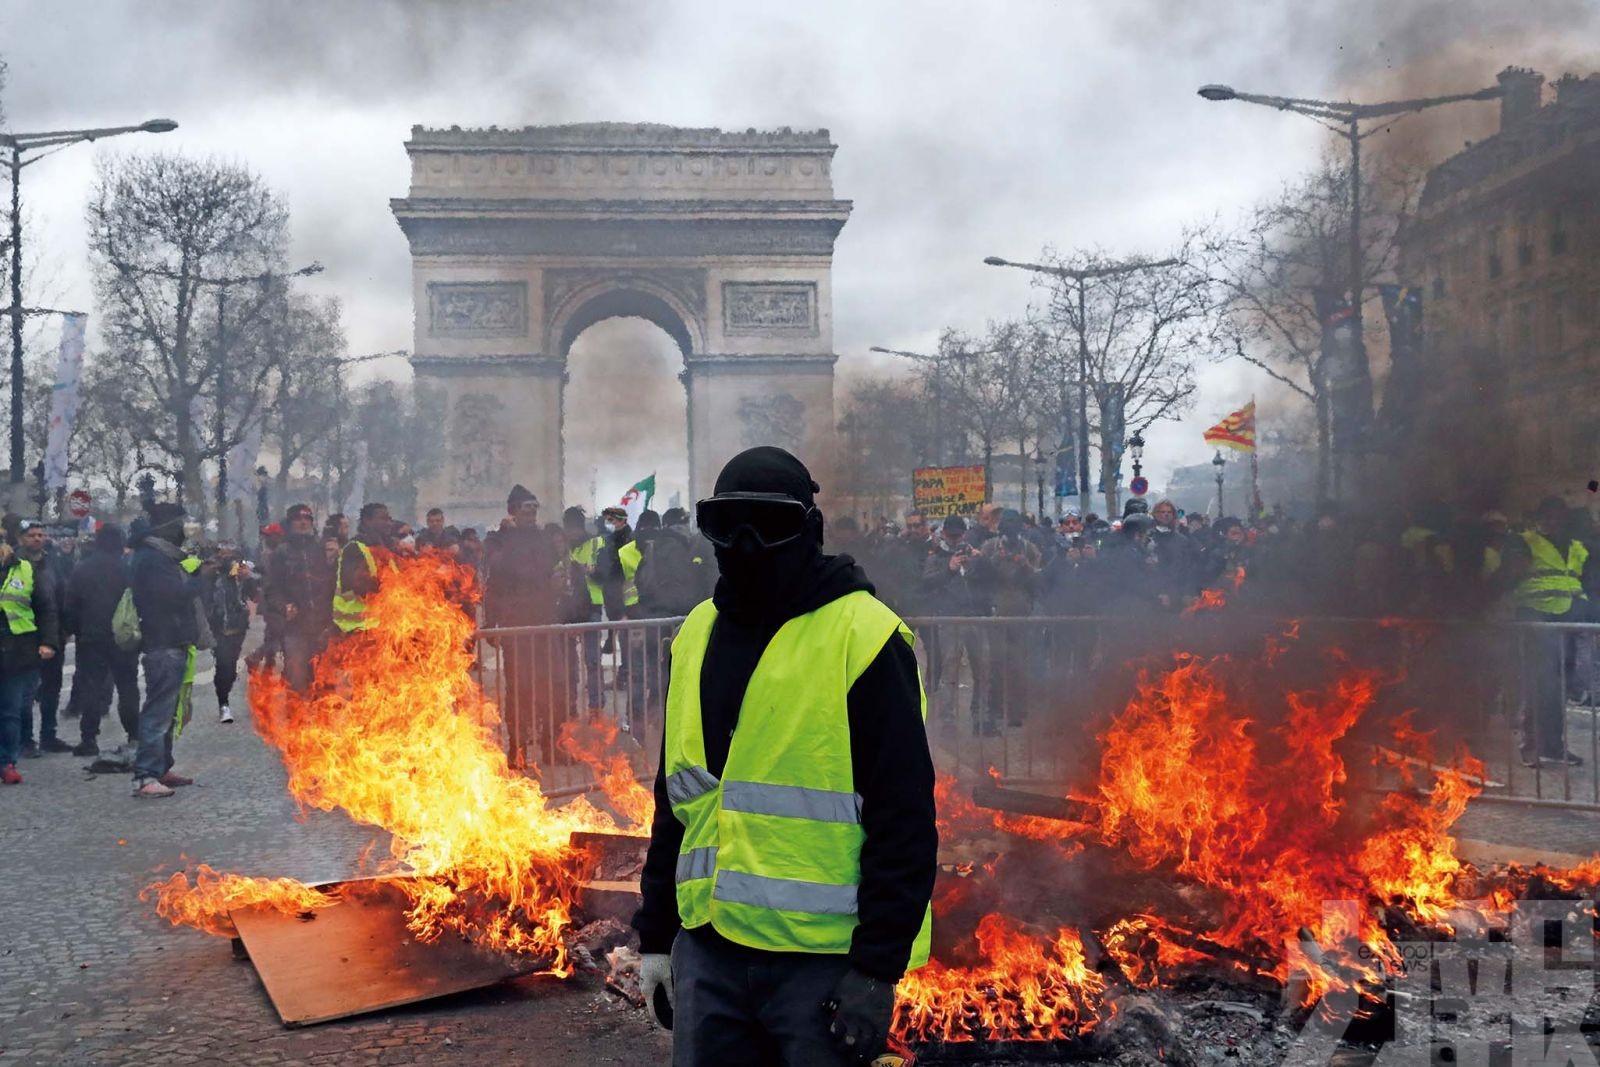 巴黎名店遭打砸焚燬 警拘近240人